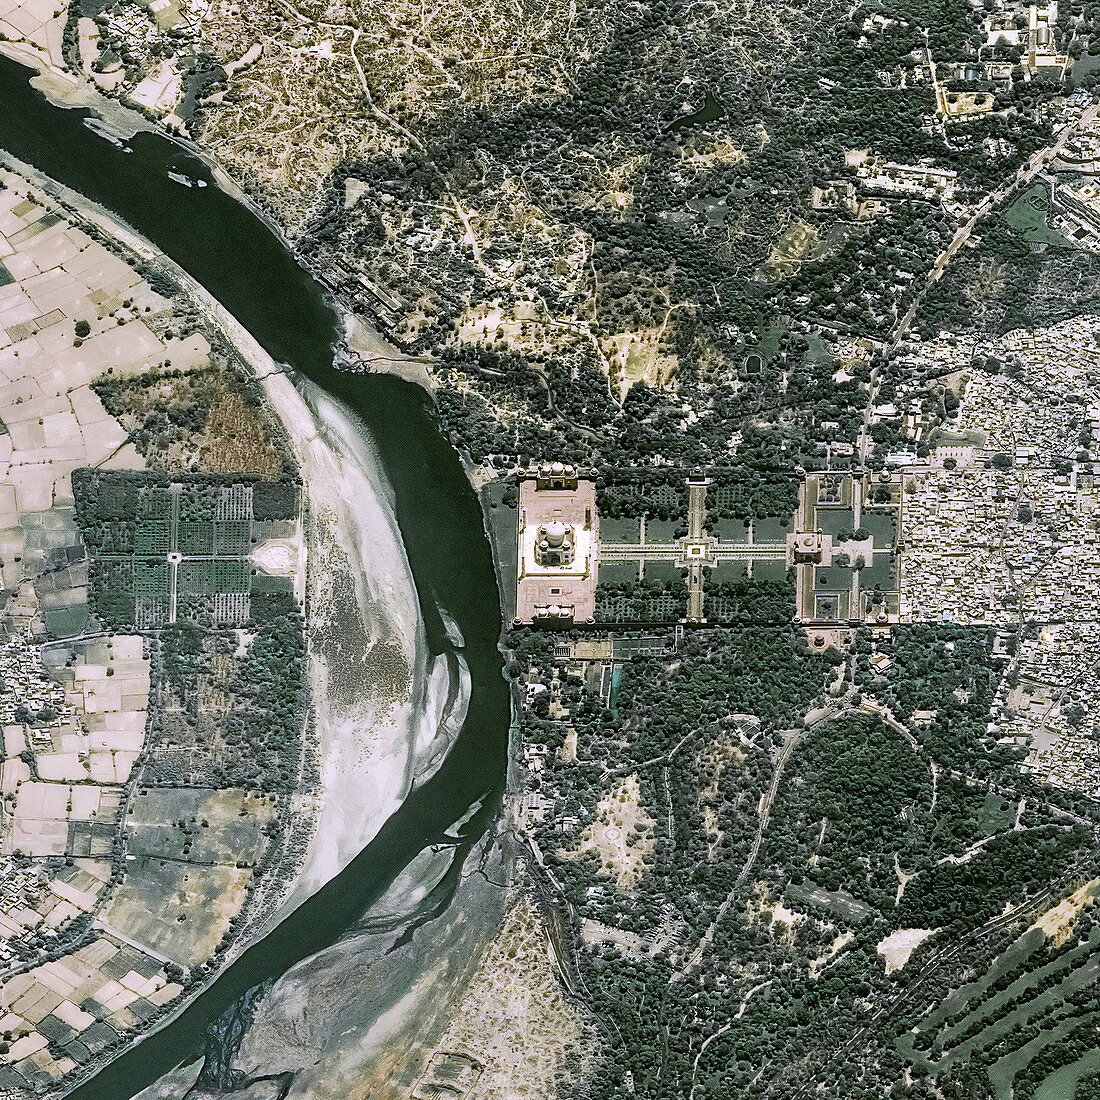 Taj Mahal, India, in 2017, satellite image